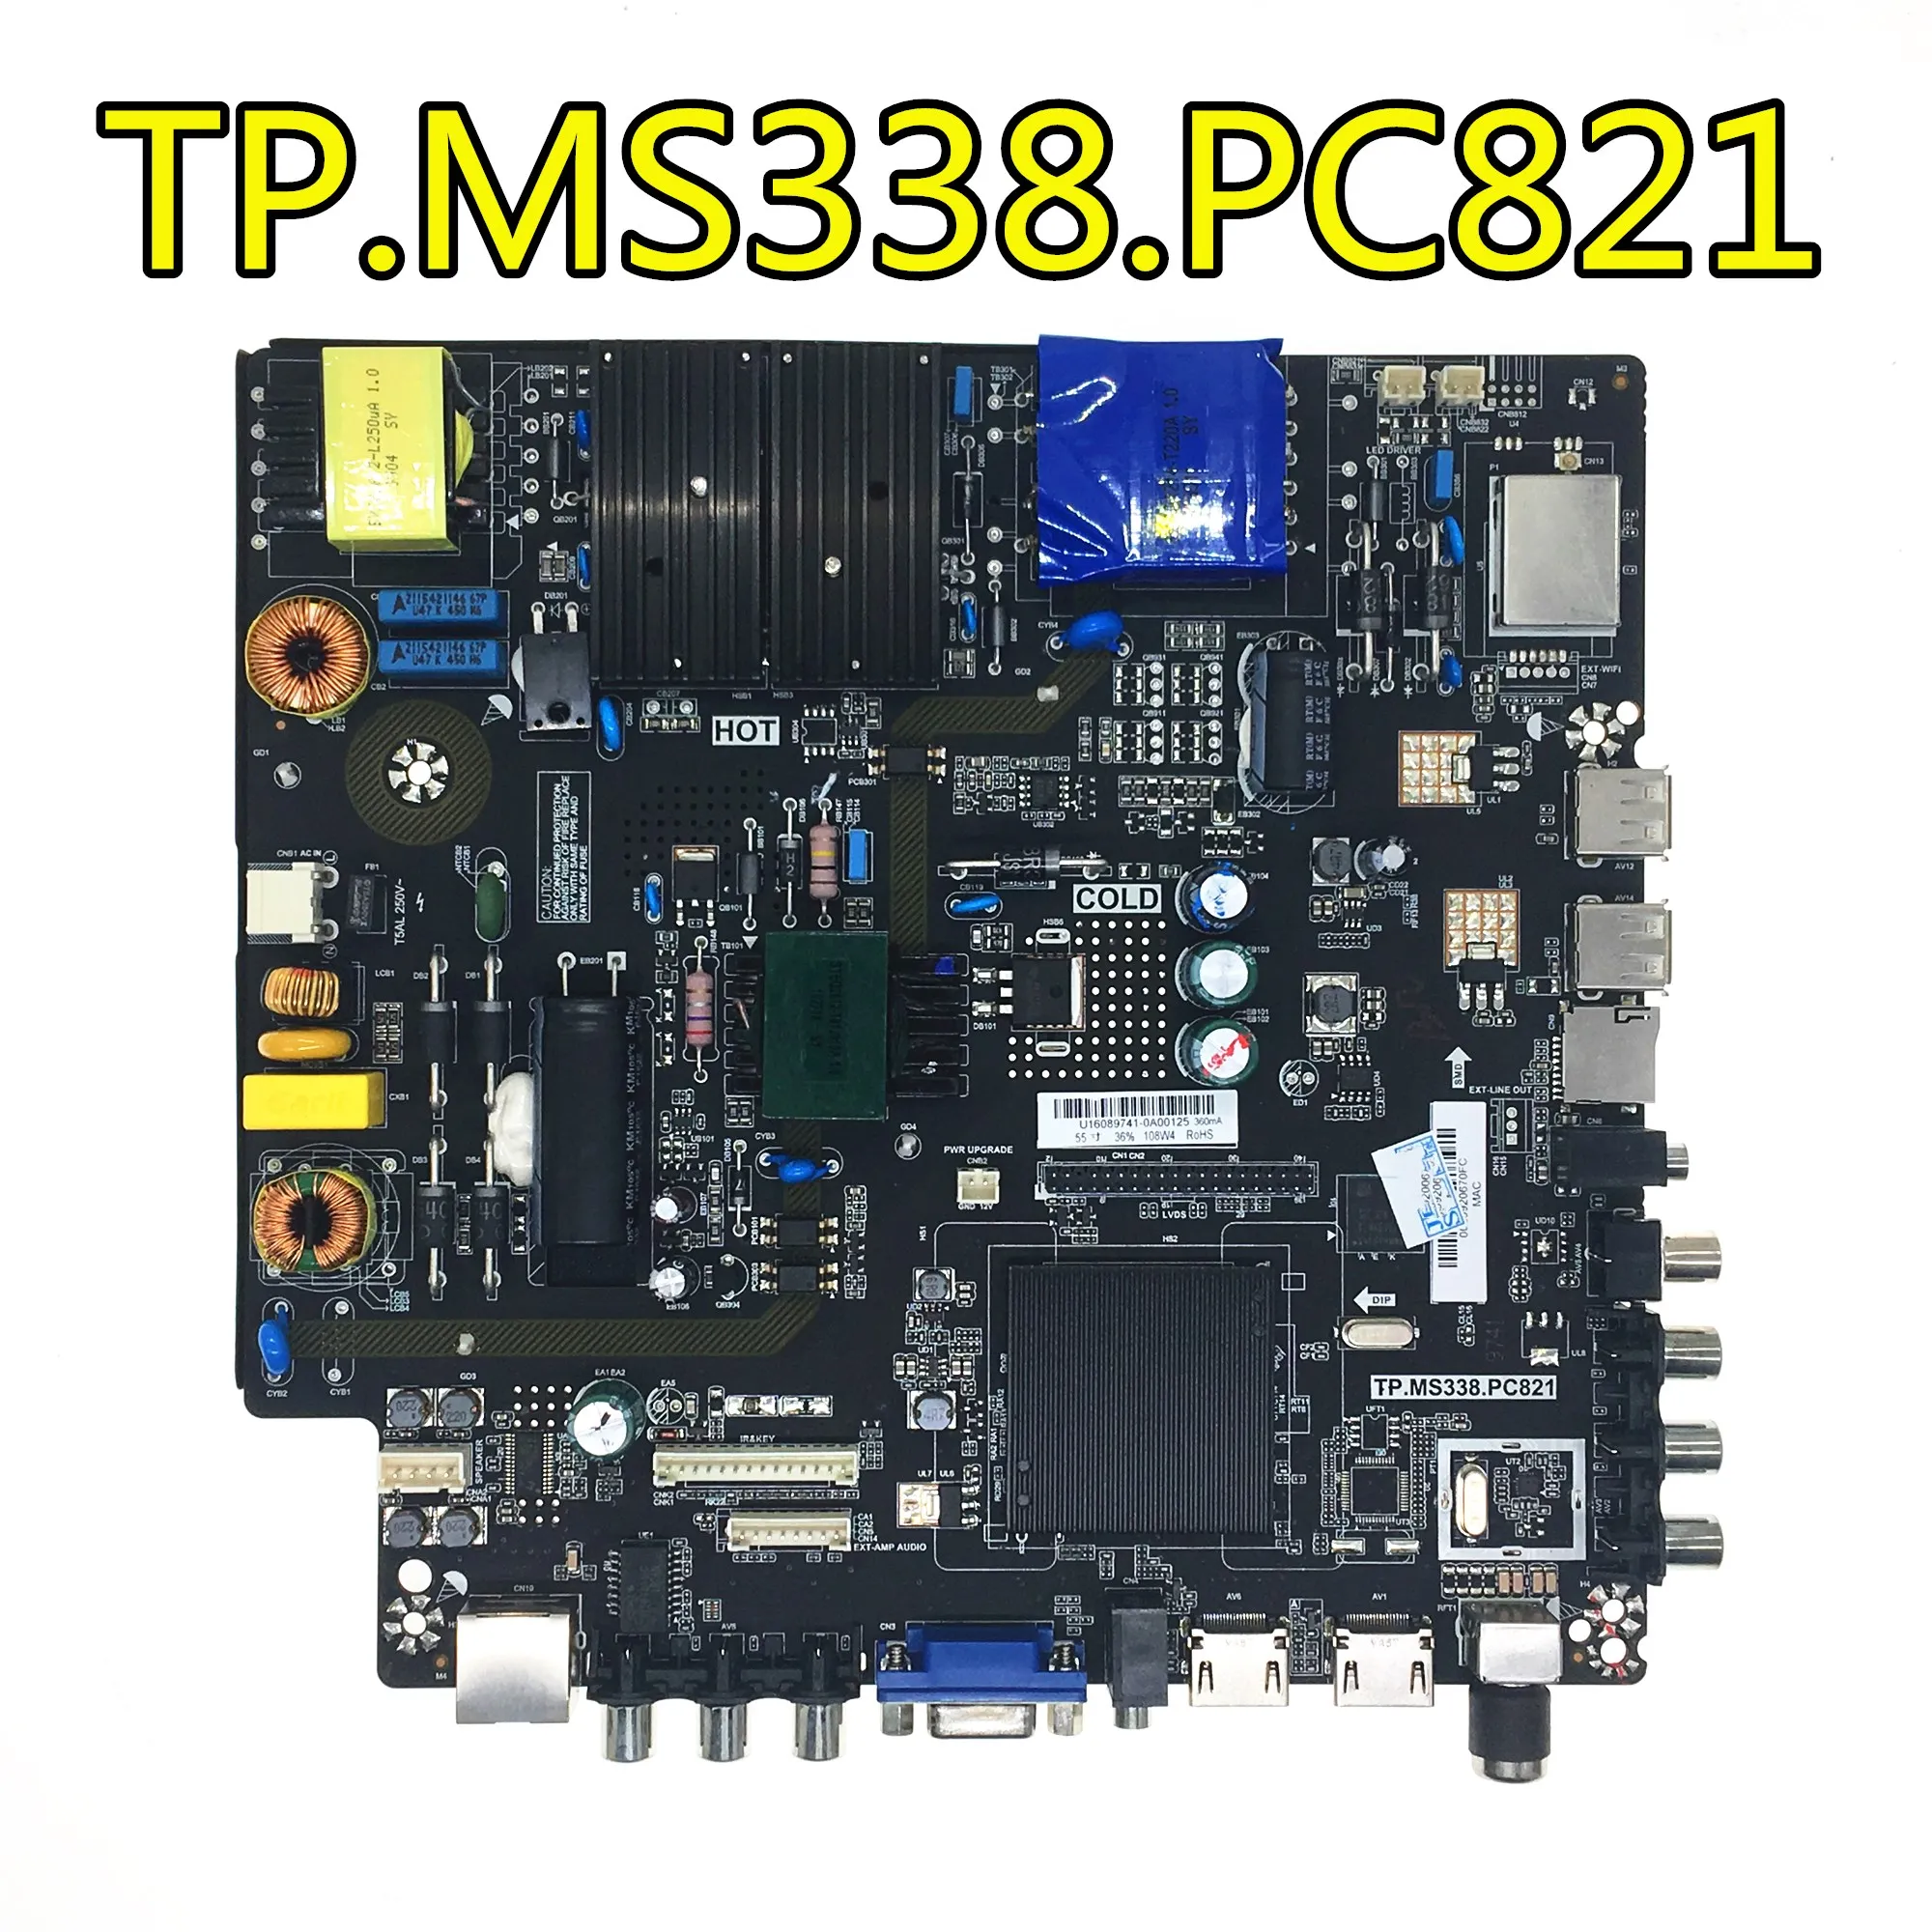 Oringal für LEHUA TP.MS338.PC821 Android smart TV drei in einem netzwerk motherboard ARBEIT 32-55 ZOLL bildschirme.